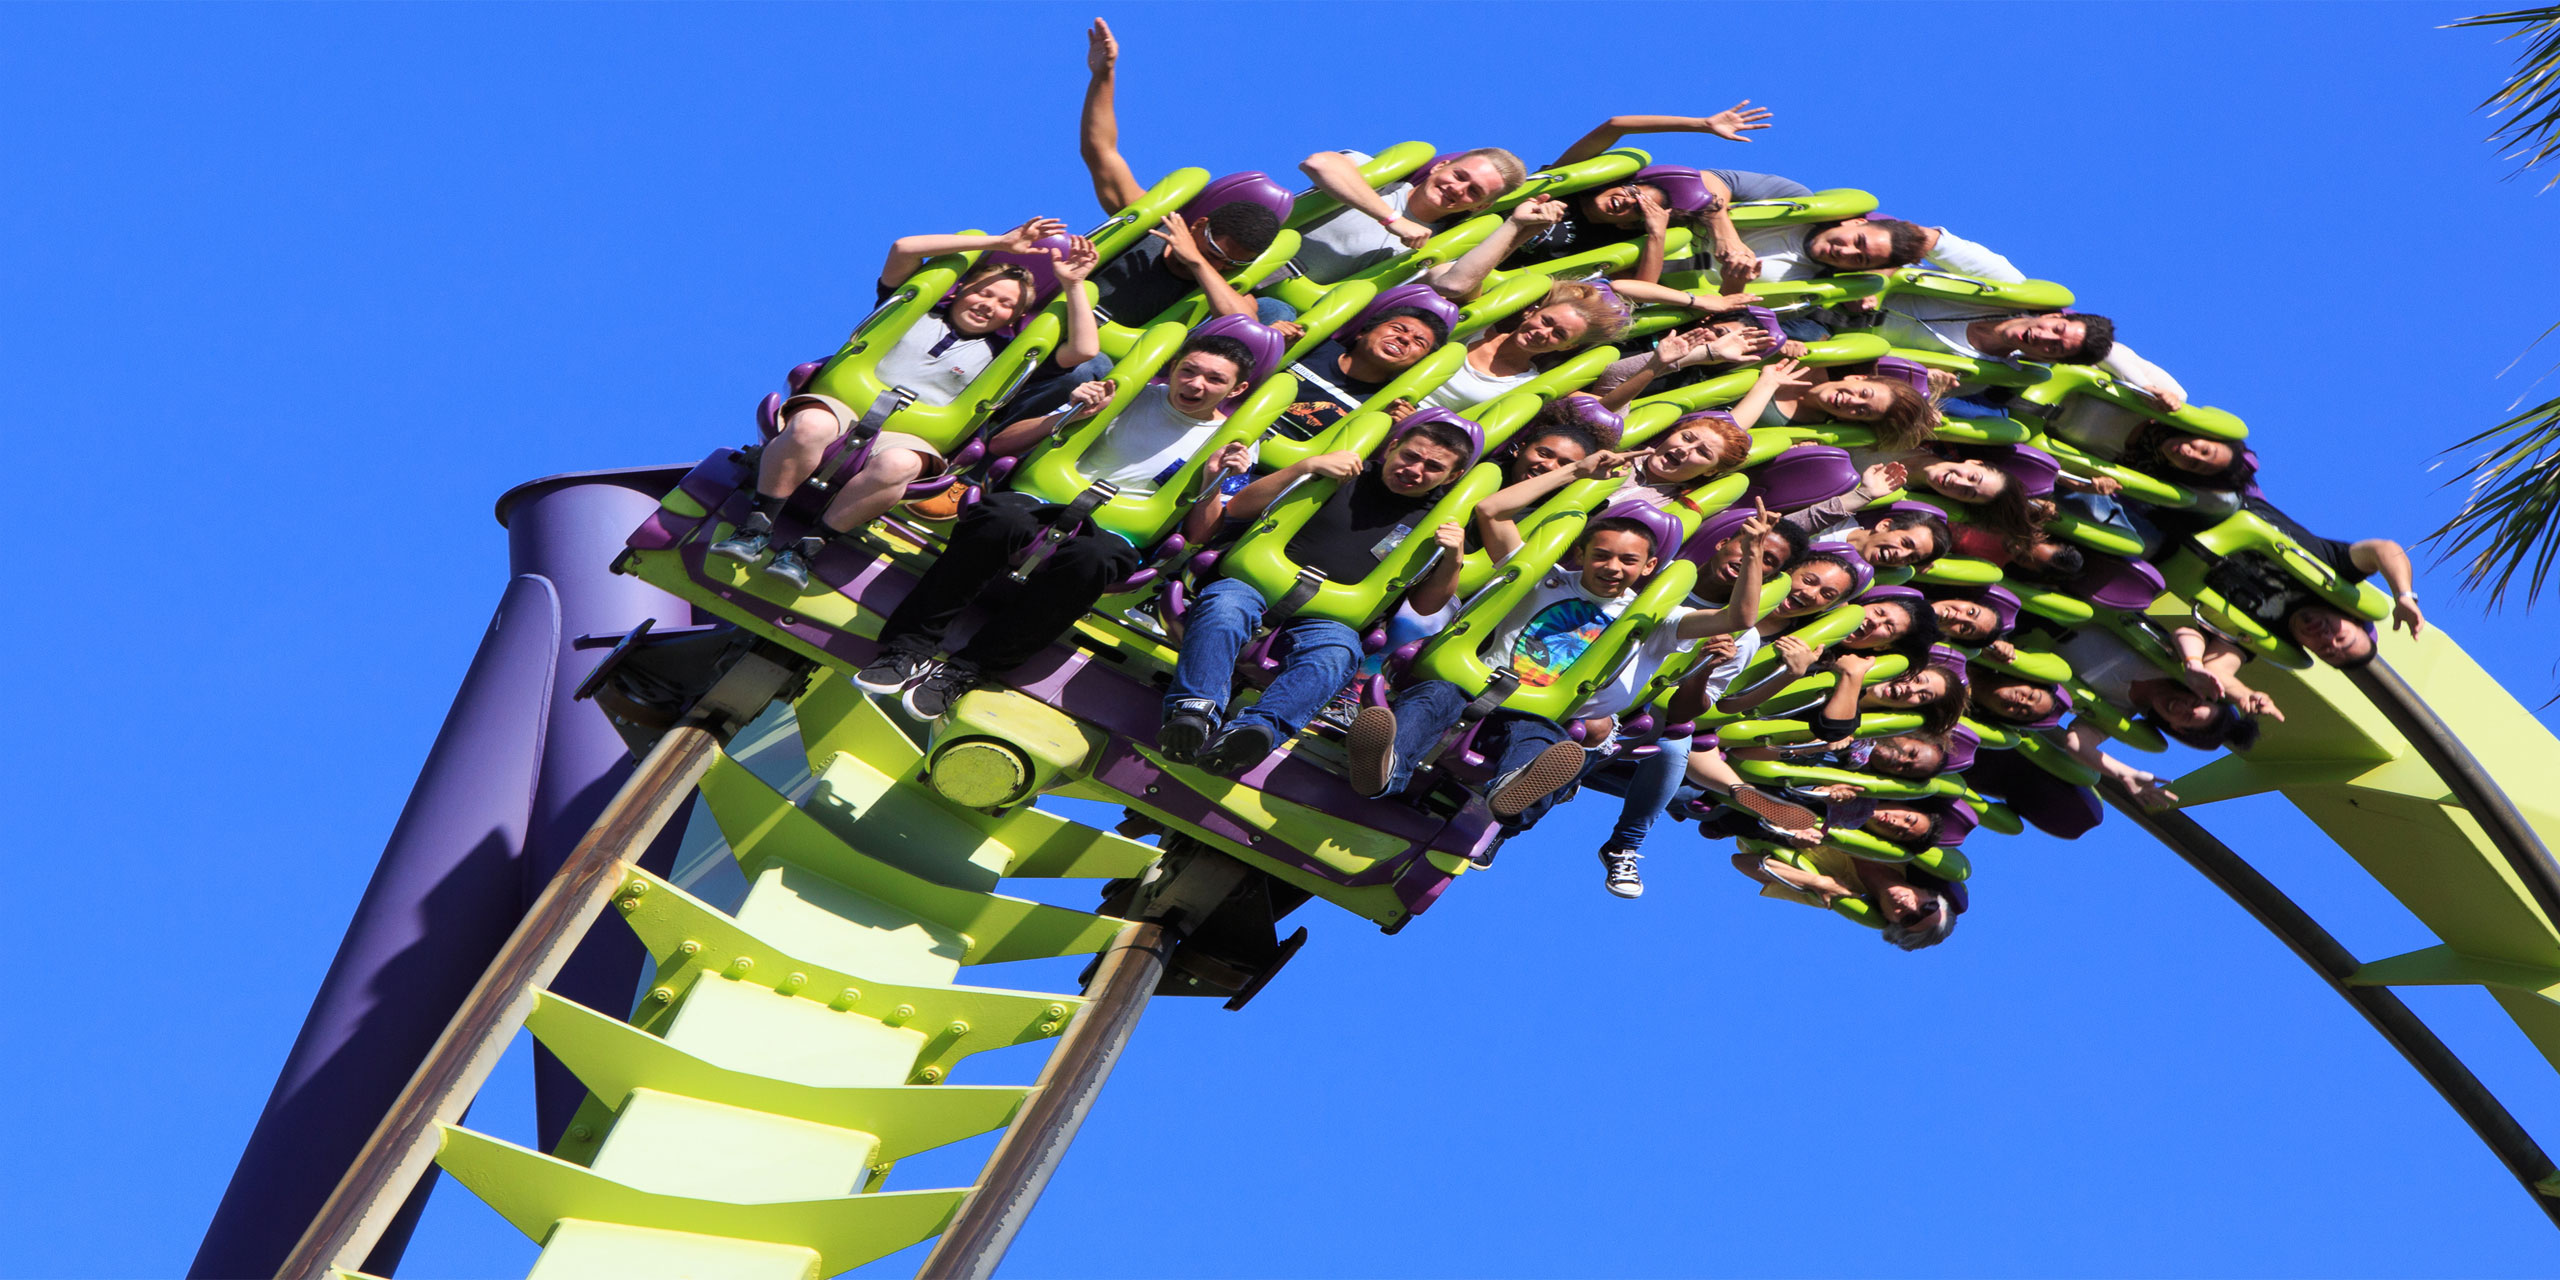 Thrill Roller Coaster; Courtesy of Cassiohabib/Shutterstock.com